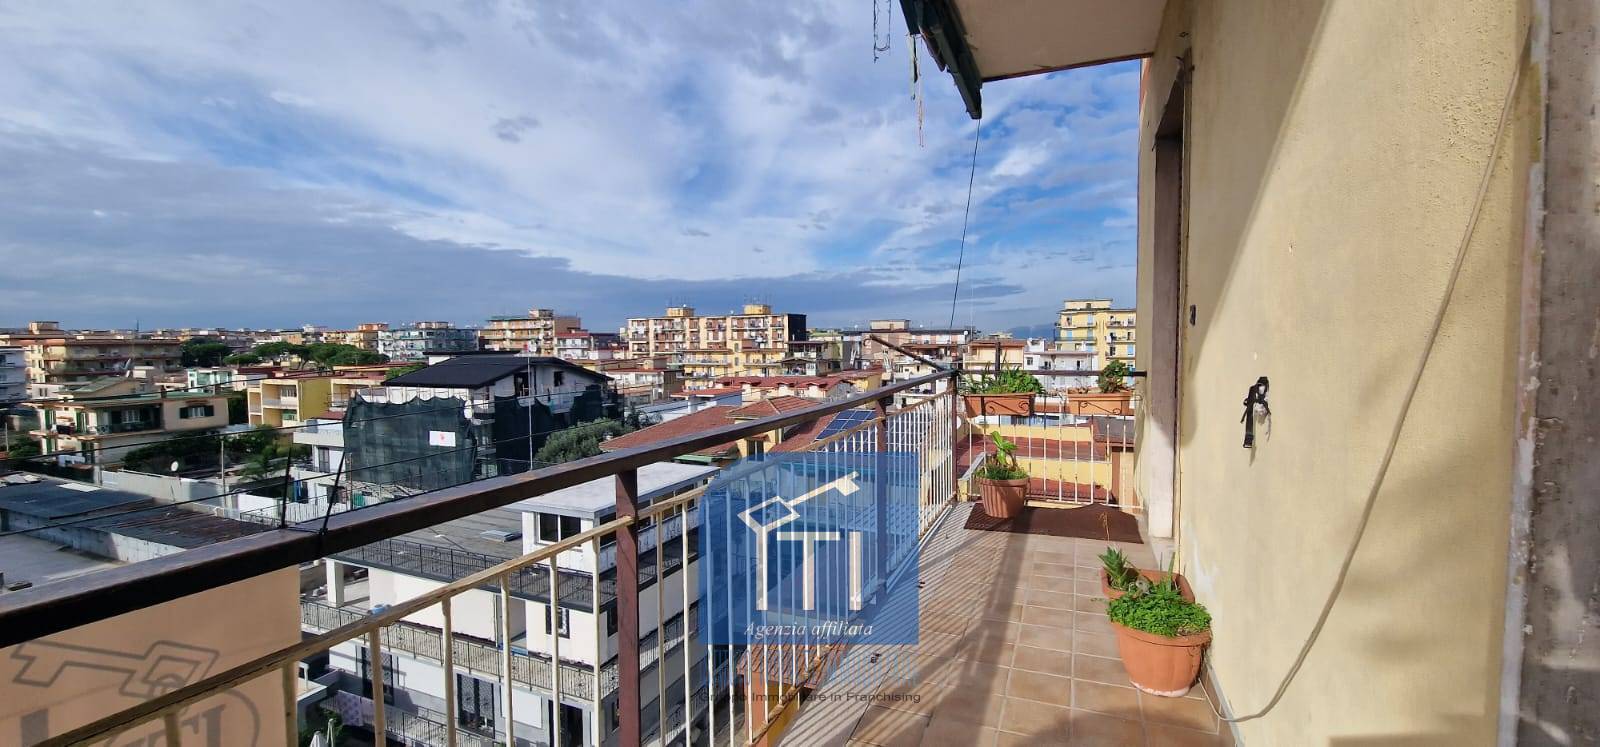 Appartamento in vendita a Arzano, 4 locali, prezzo € 159.000 | PortaleAgenzieImmobiliari.it